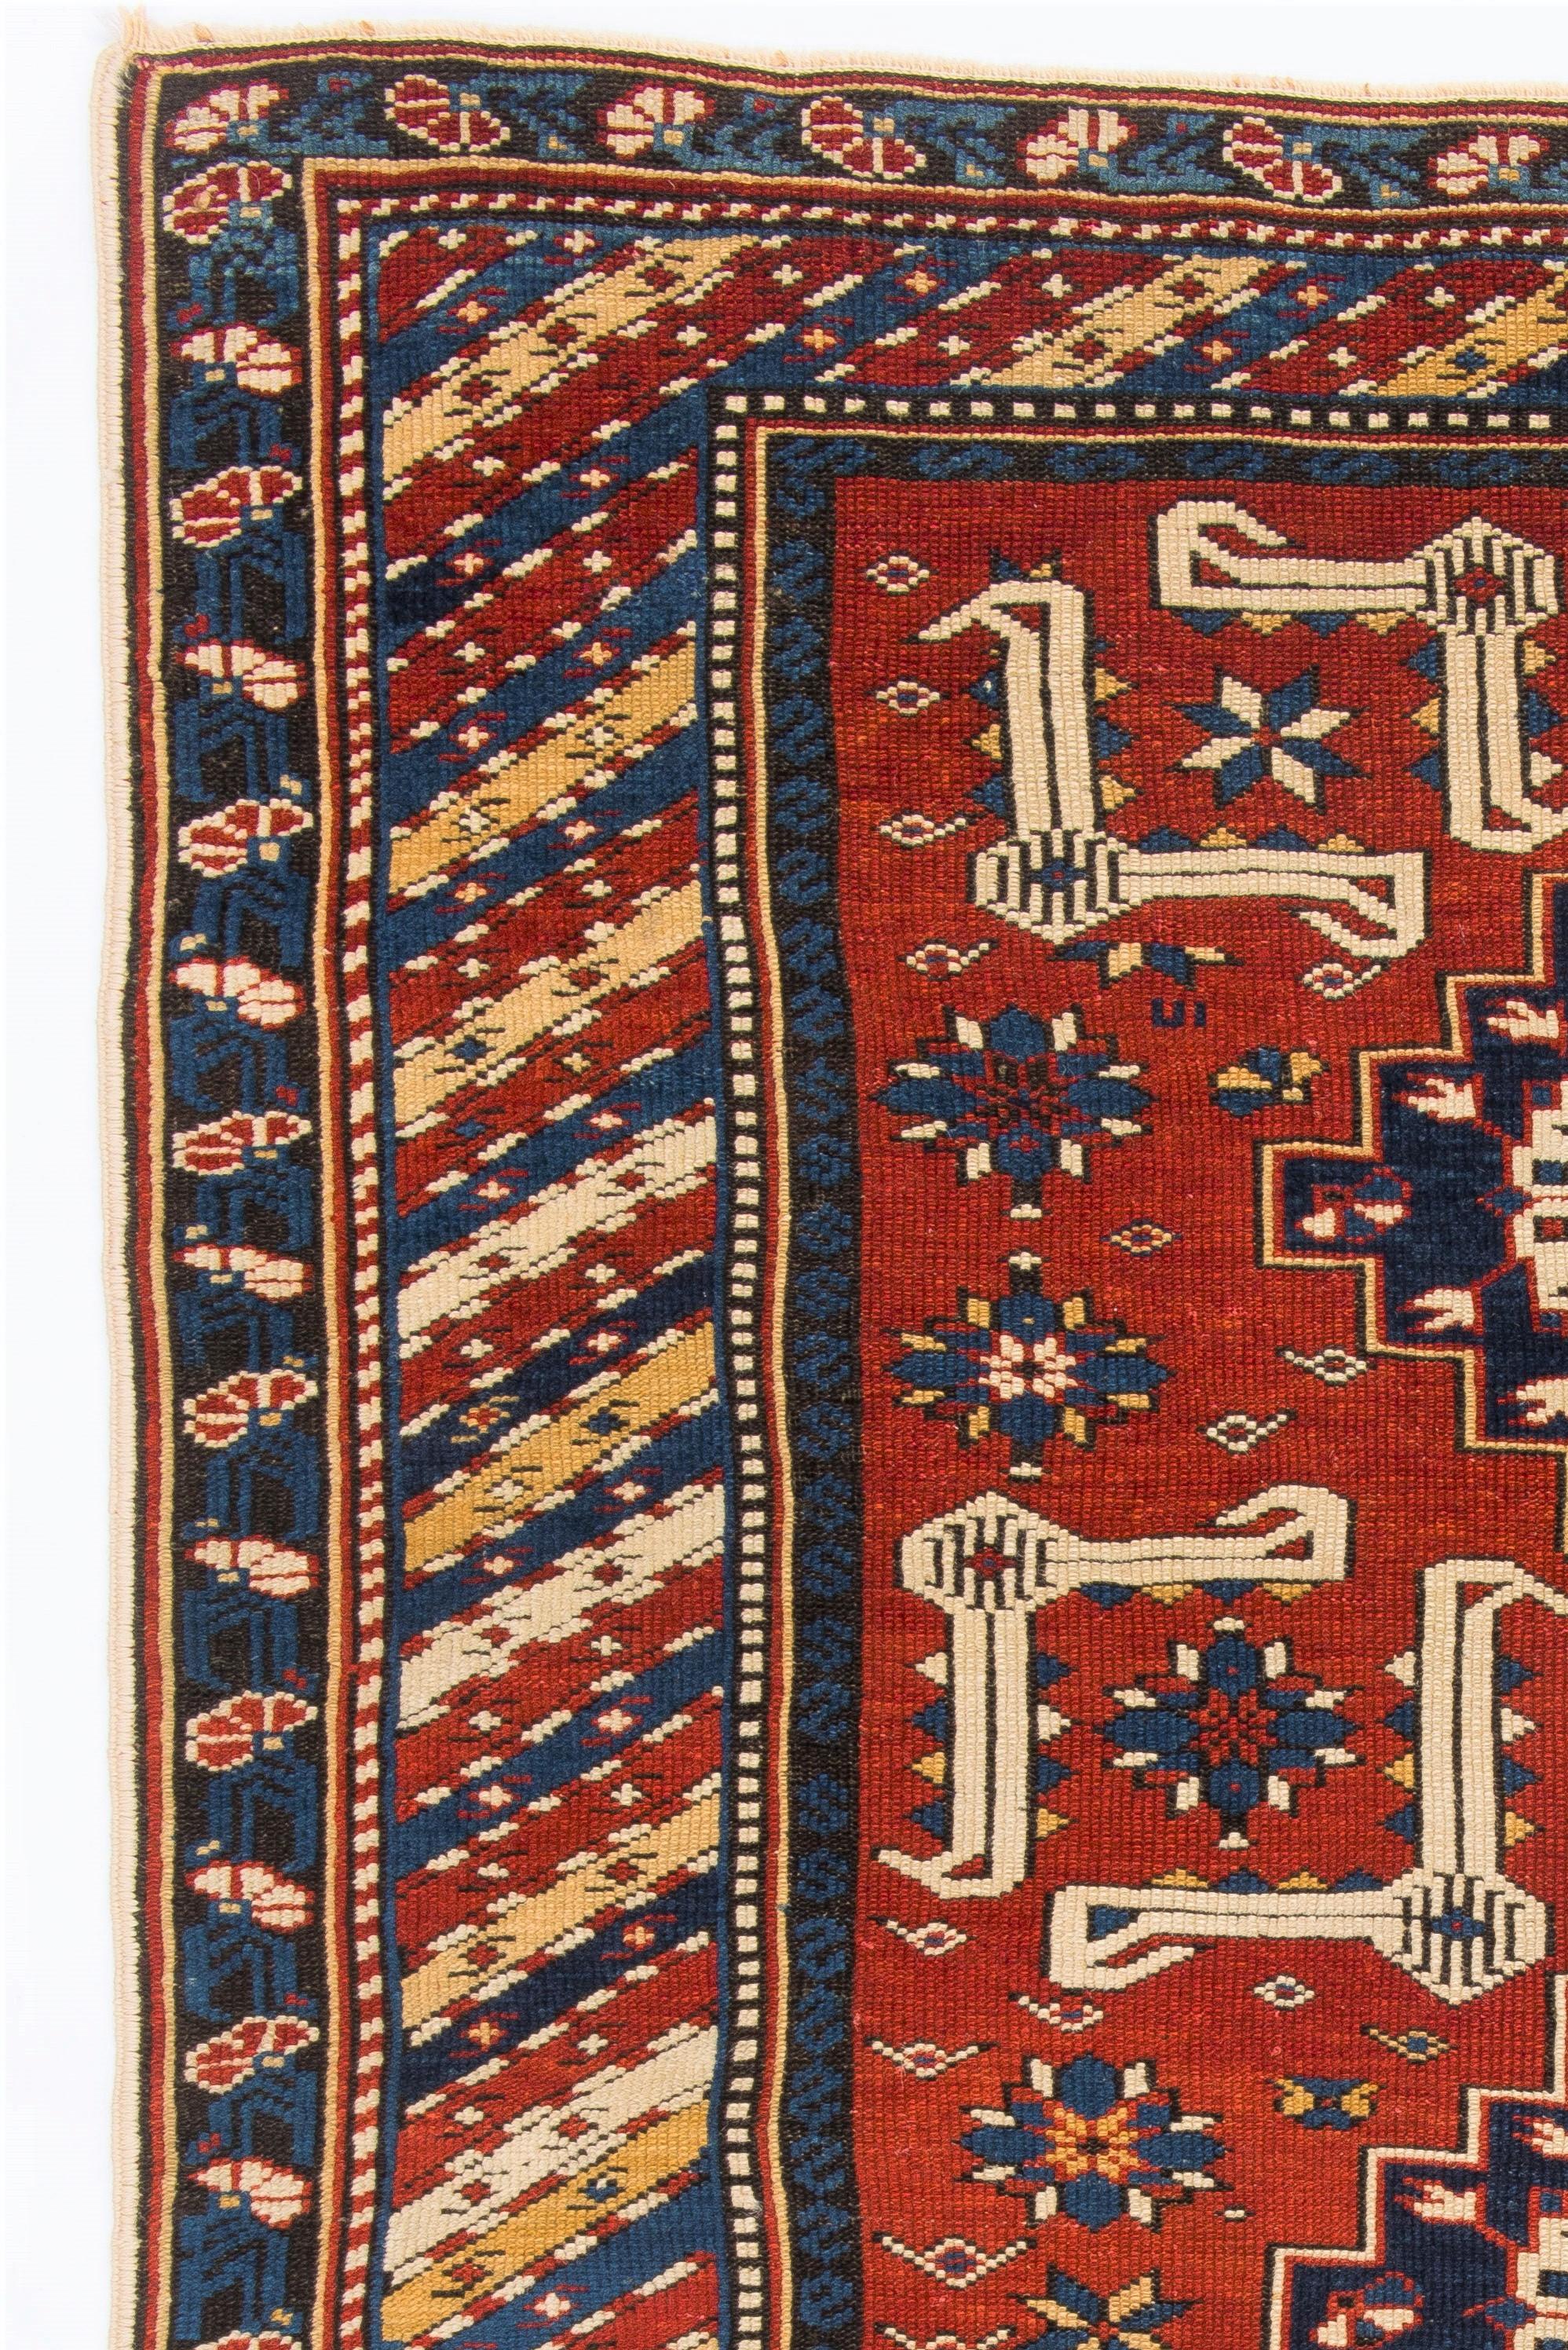 19th Century 3.5x5.3 ft Antique Caucasian Karagashli Shirvan Rug, Ca 1880 For Sale